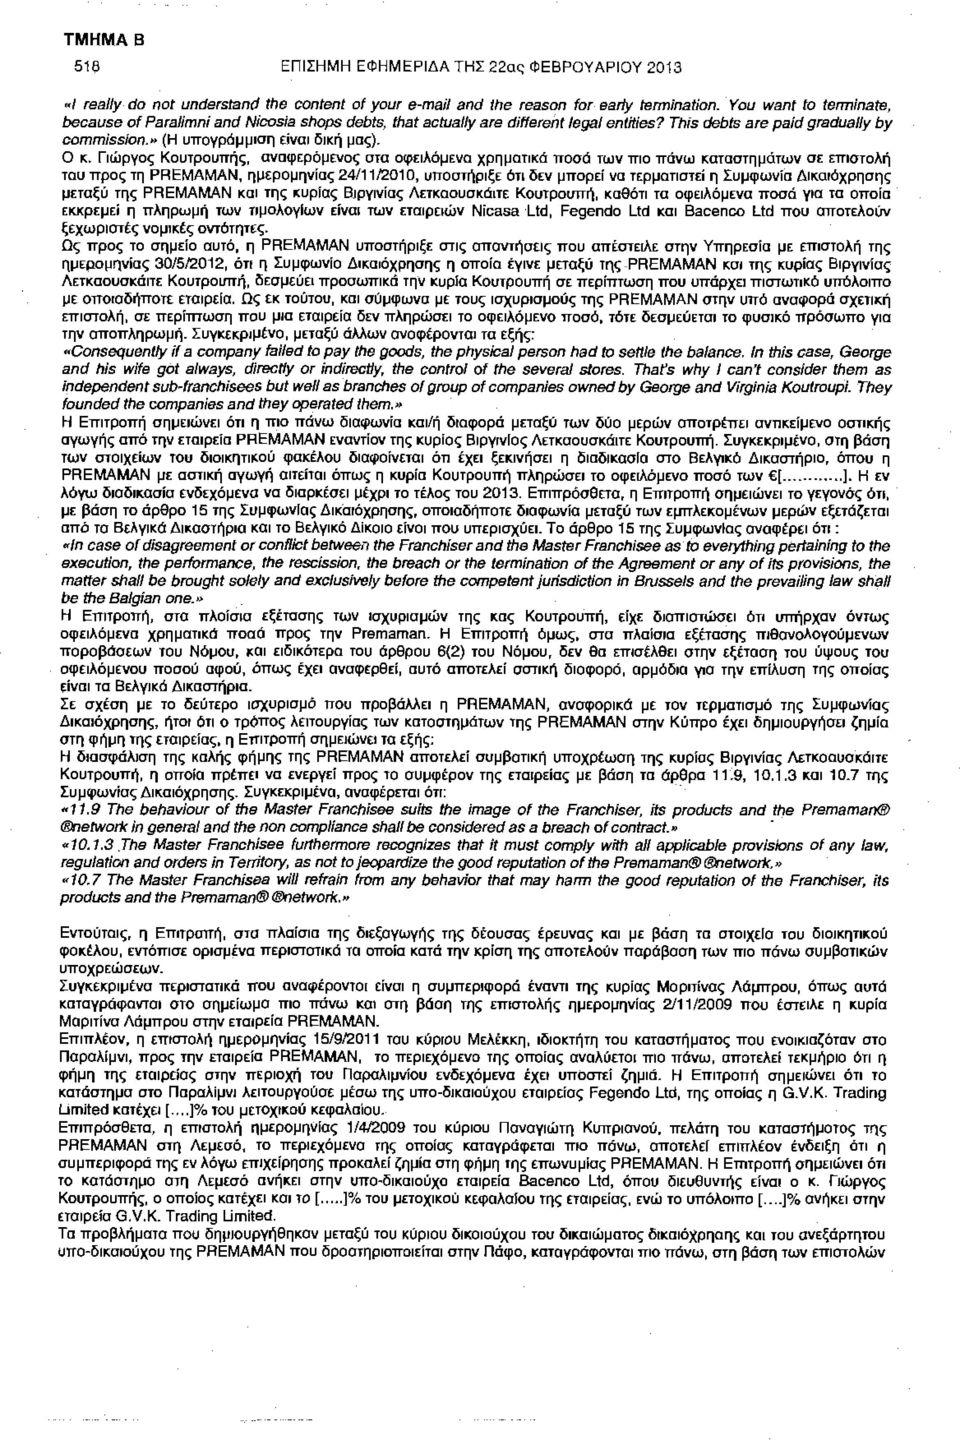 Γιώργος Κουτρουπής, αναφερόμενος στα οφειλόμενα χρηματικά ποσά των πιο πάνω καταστημάτων σε επιστολή του προς τη PREMAMAN, ημερομηνίας 24/11/2010, υποστήριξε ότι δεν μπορεί να τερματιστεί η Συμφωνία